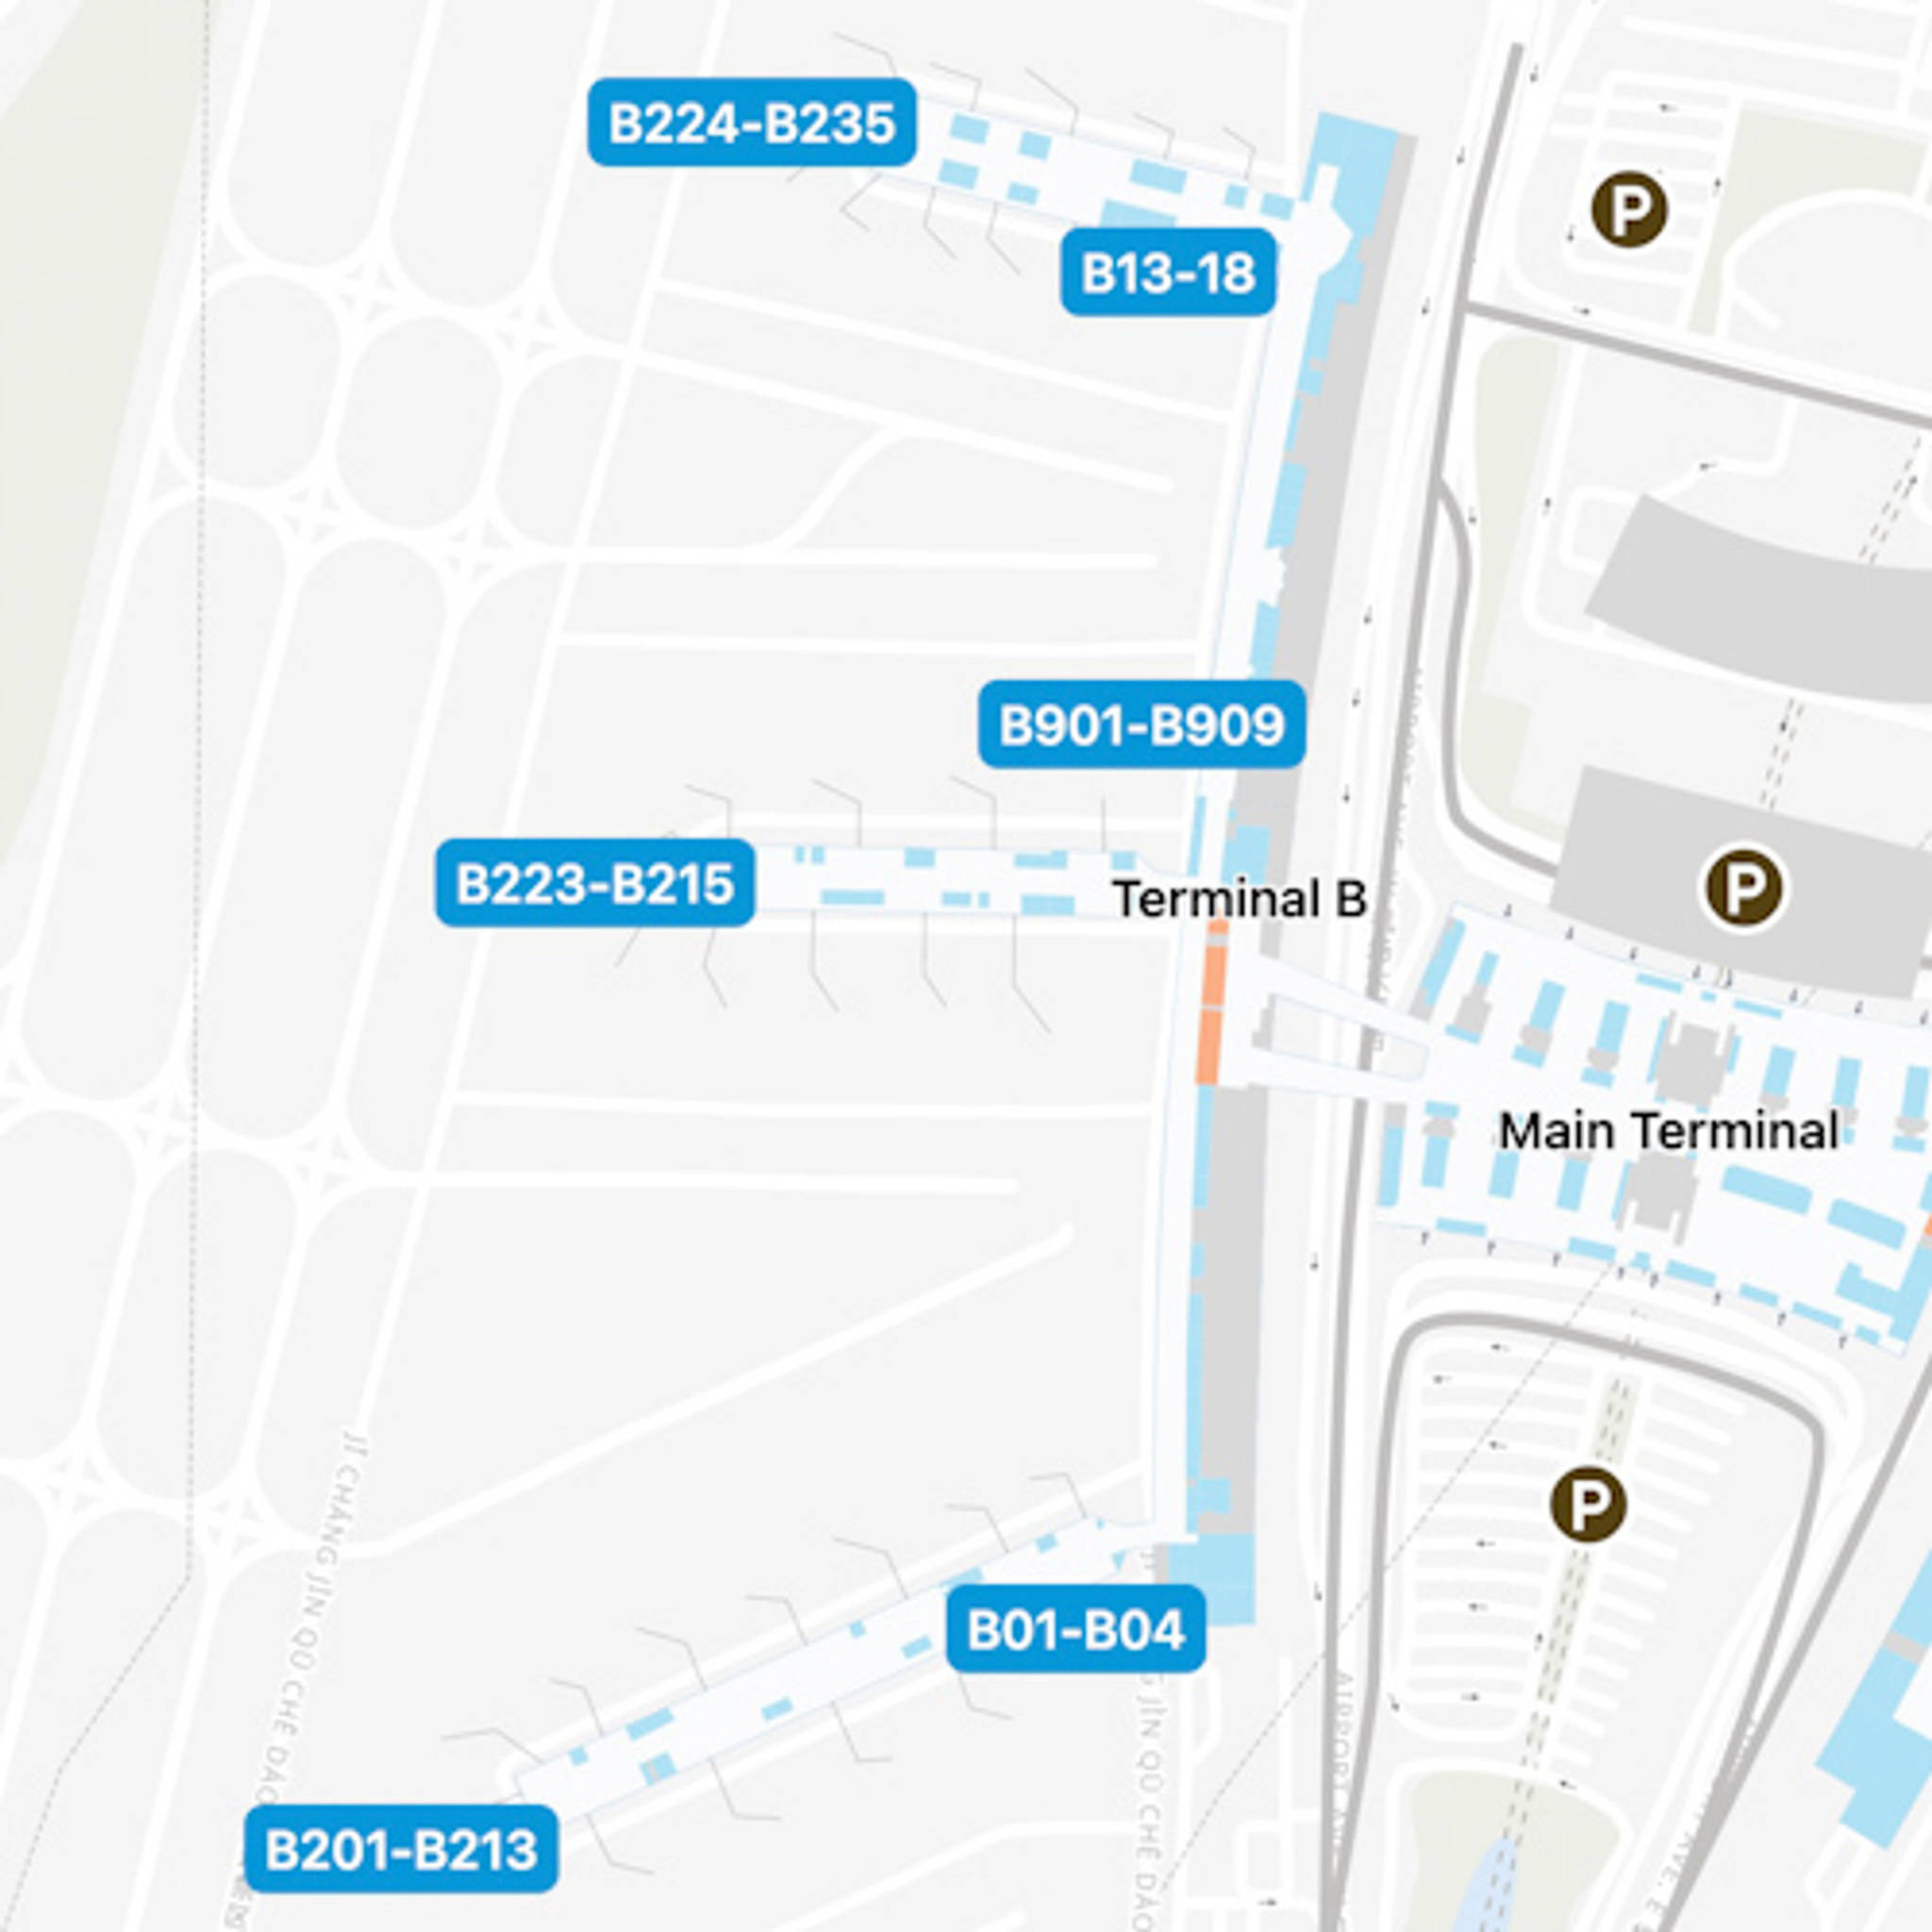 Guangzhou Baiyun Airport CAN Concourse B Map